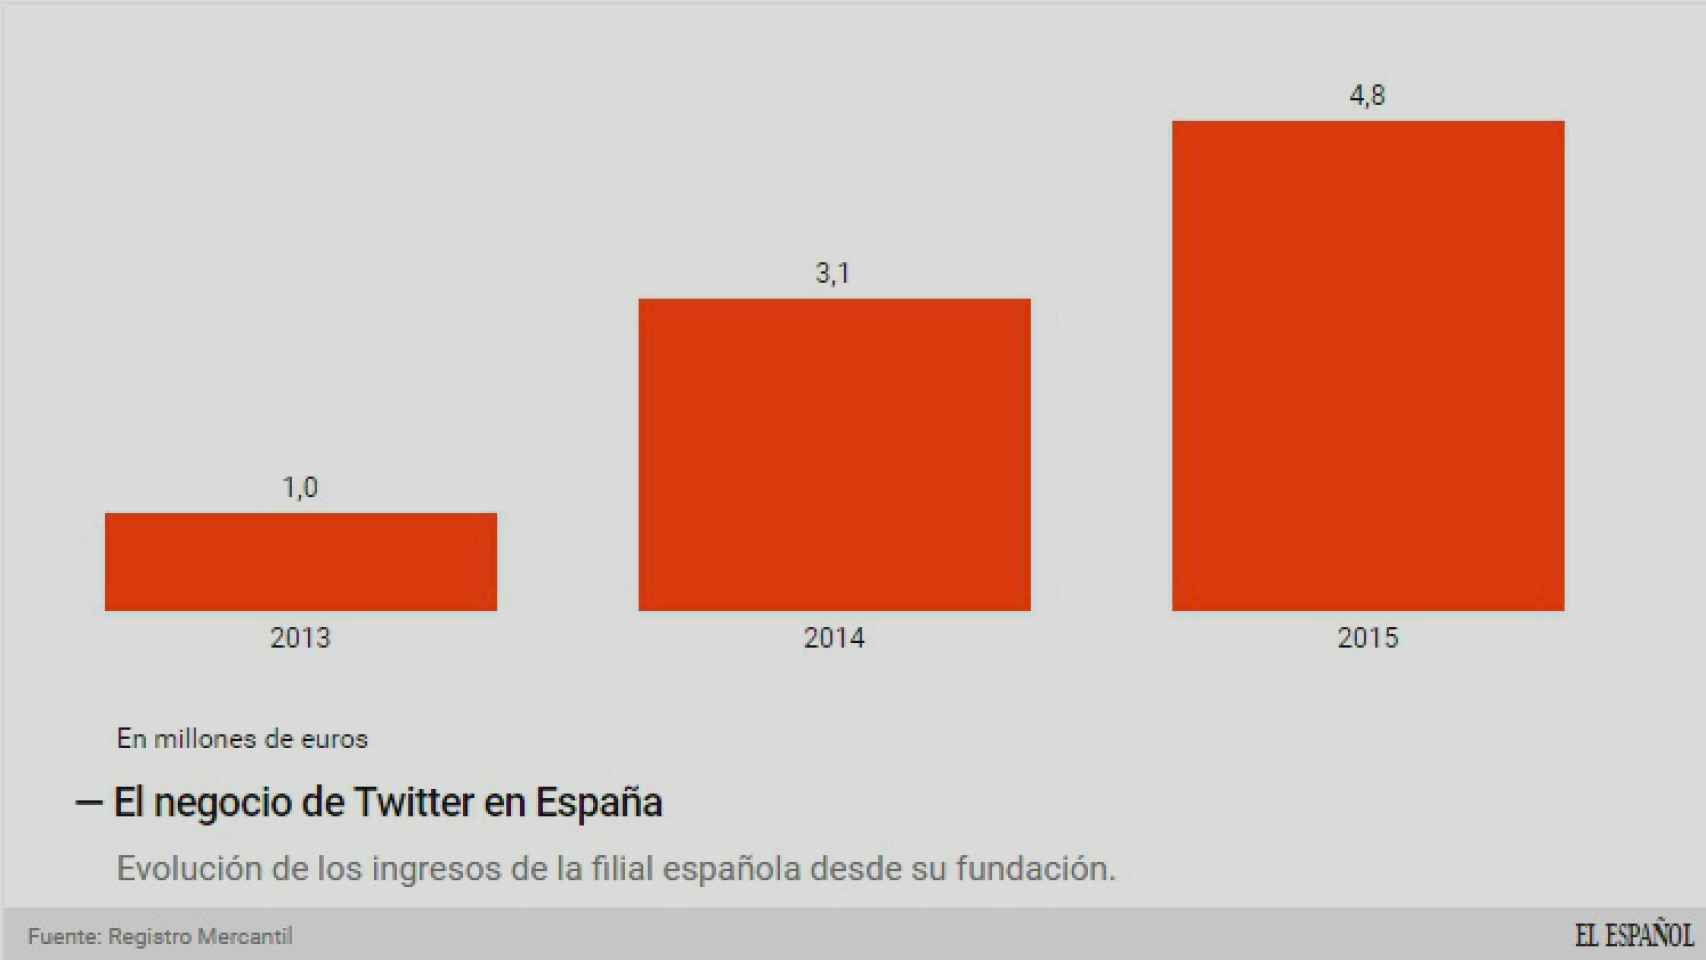 Evolución de los ingresos de Twitter en España.